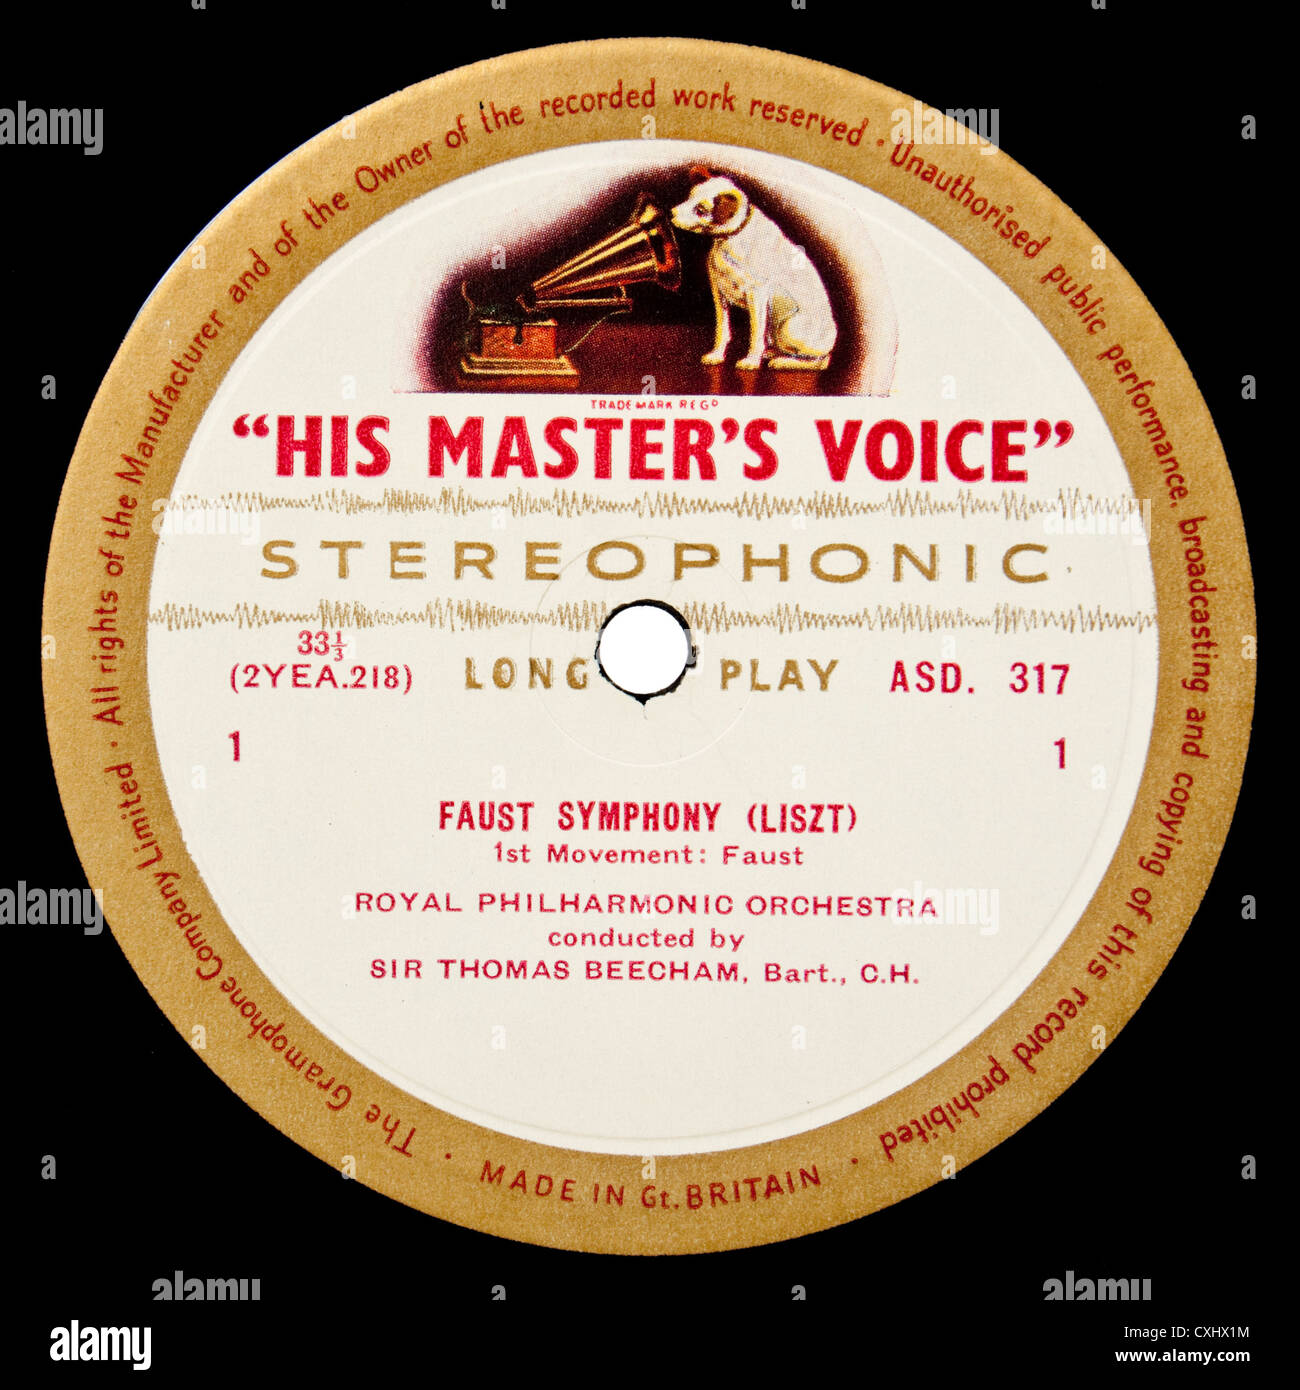 Beispiel für sehr seltene HMV ASD317 klassischen Plattenlabel - "A Faust-Sinfonie" (Orpheus) von Franz Liszt Stockfoto